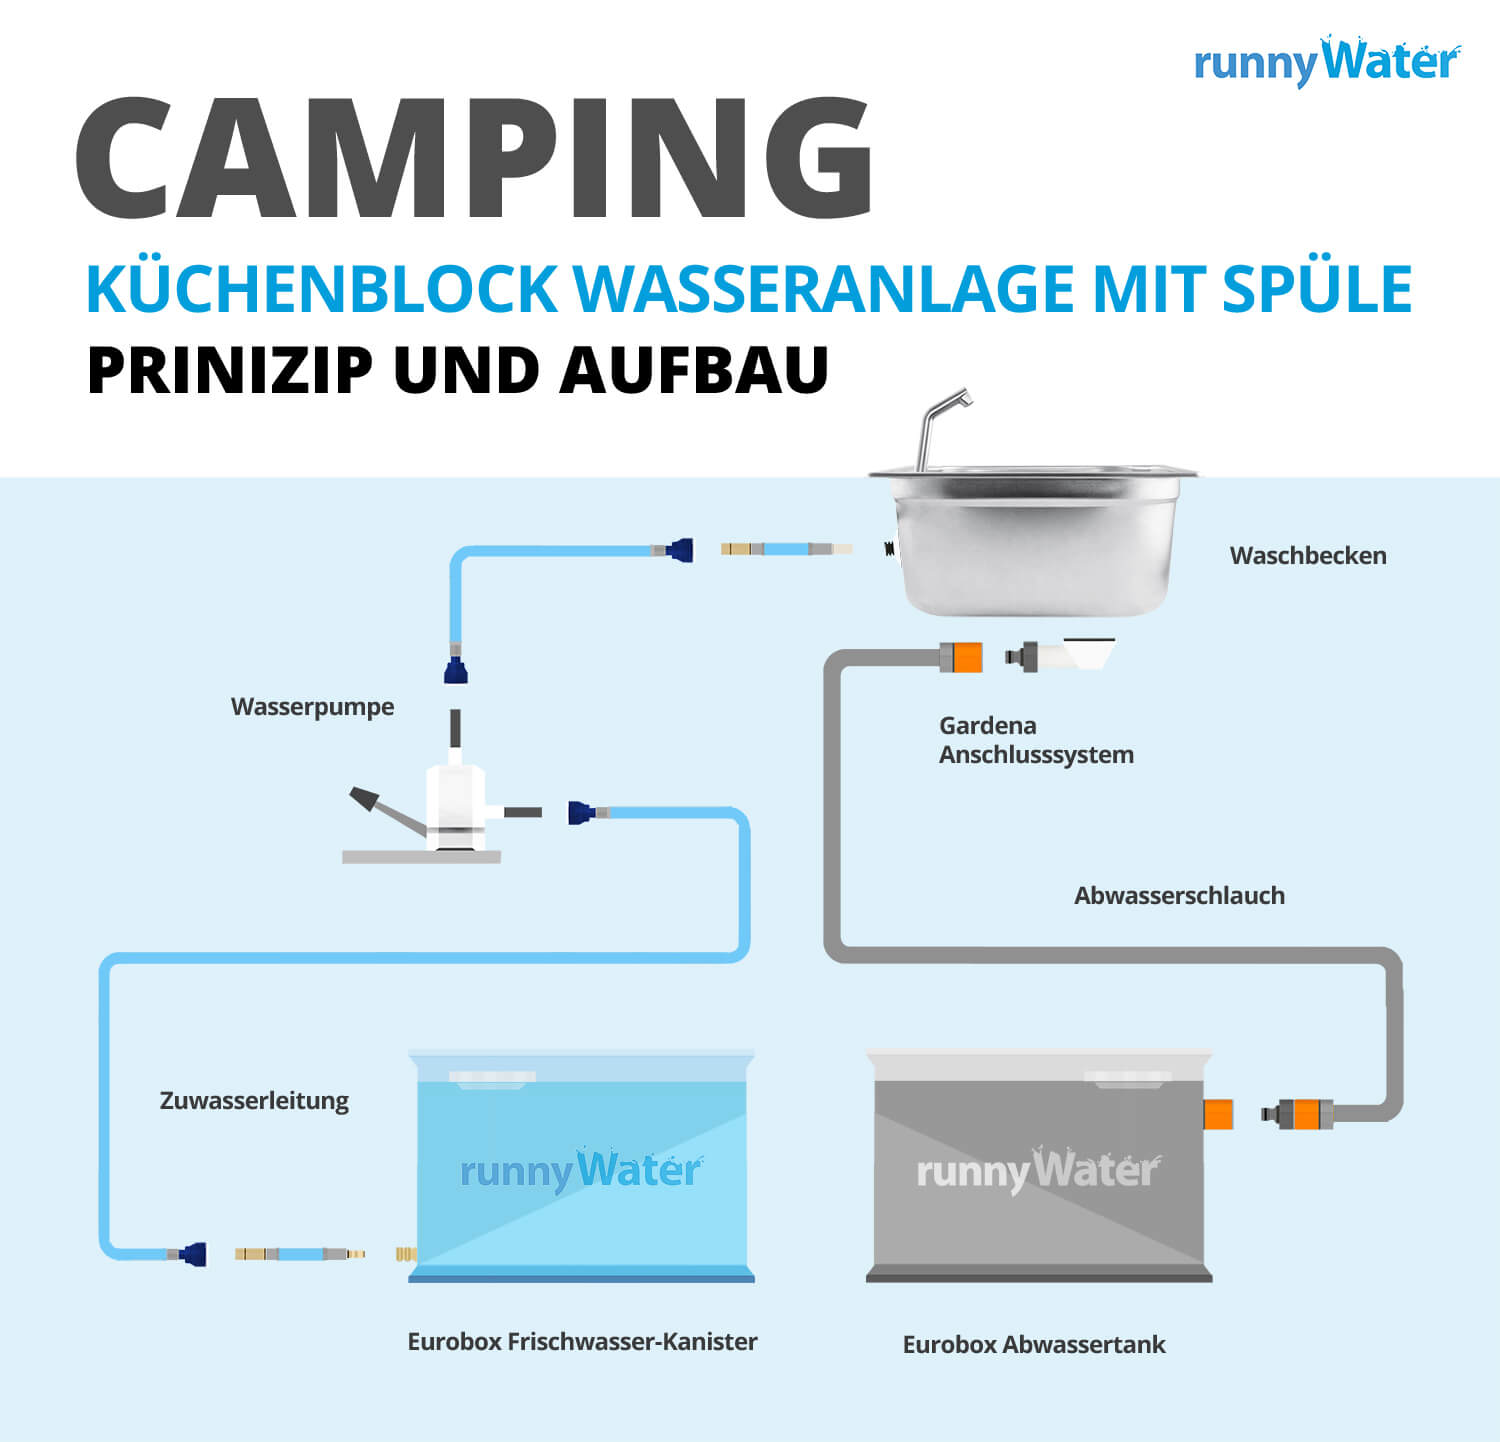 Mobile Wasseranlage Campingküche bauen